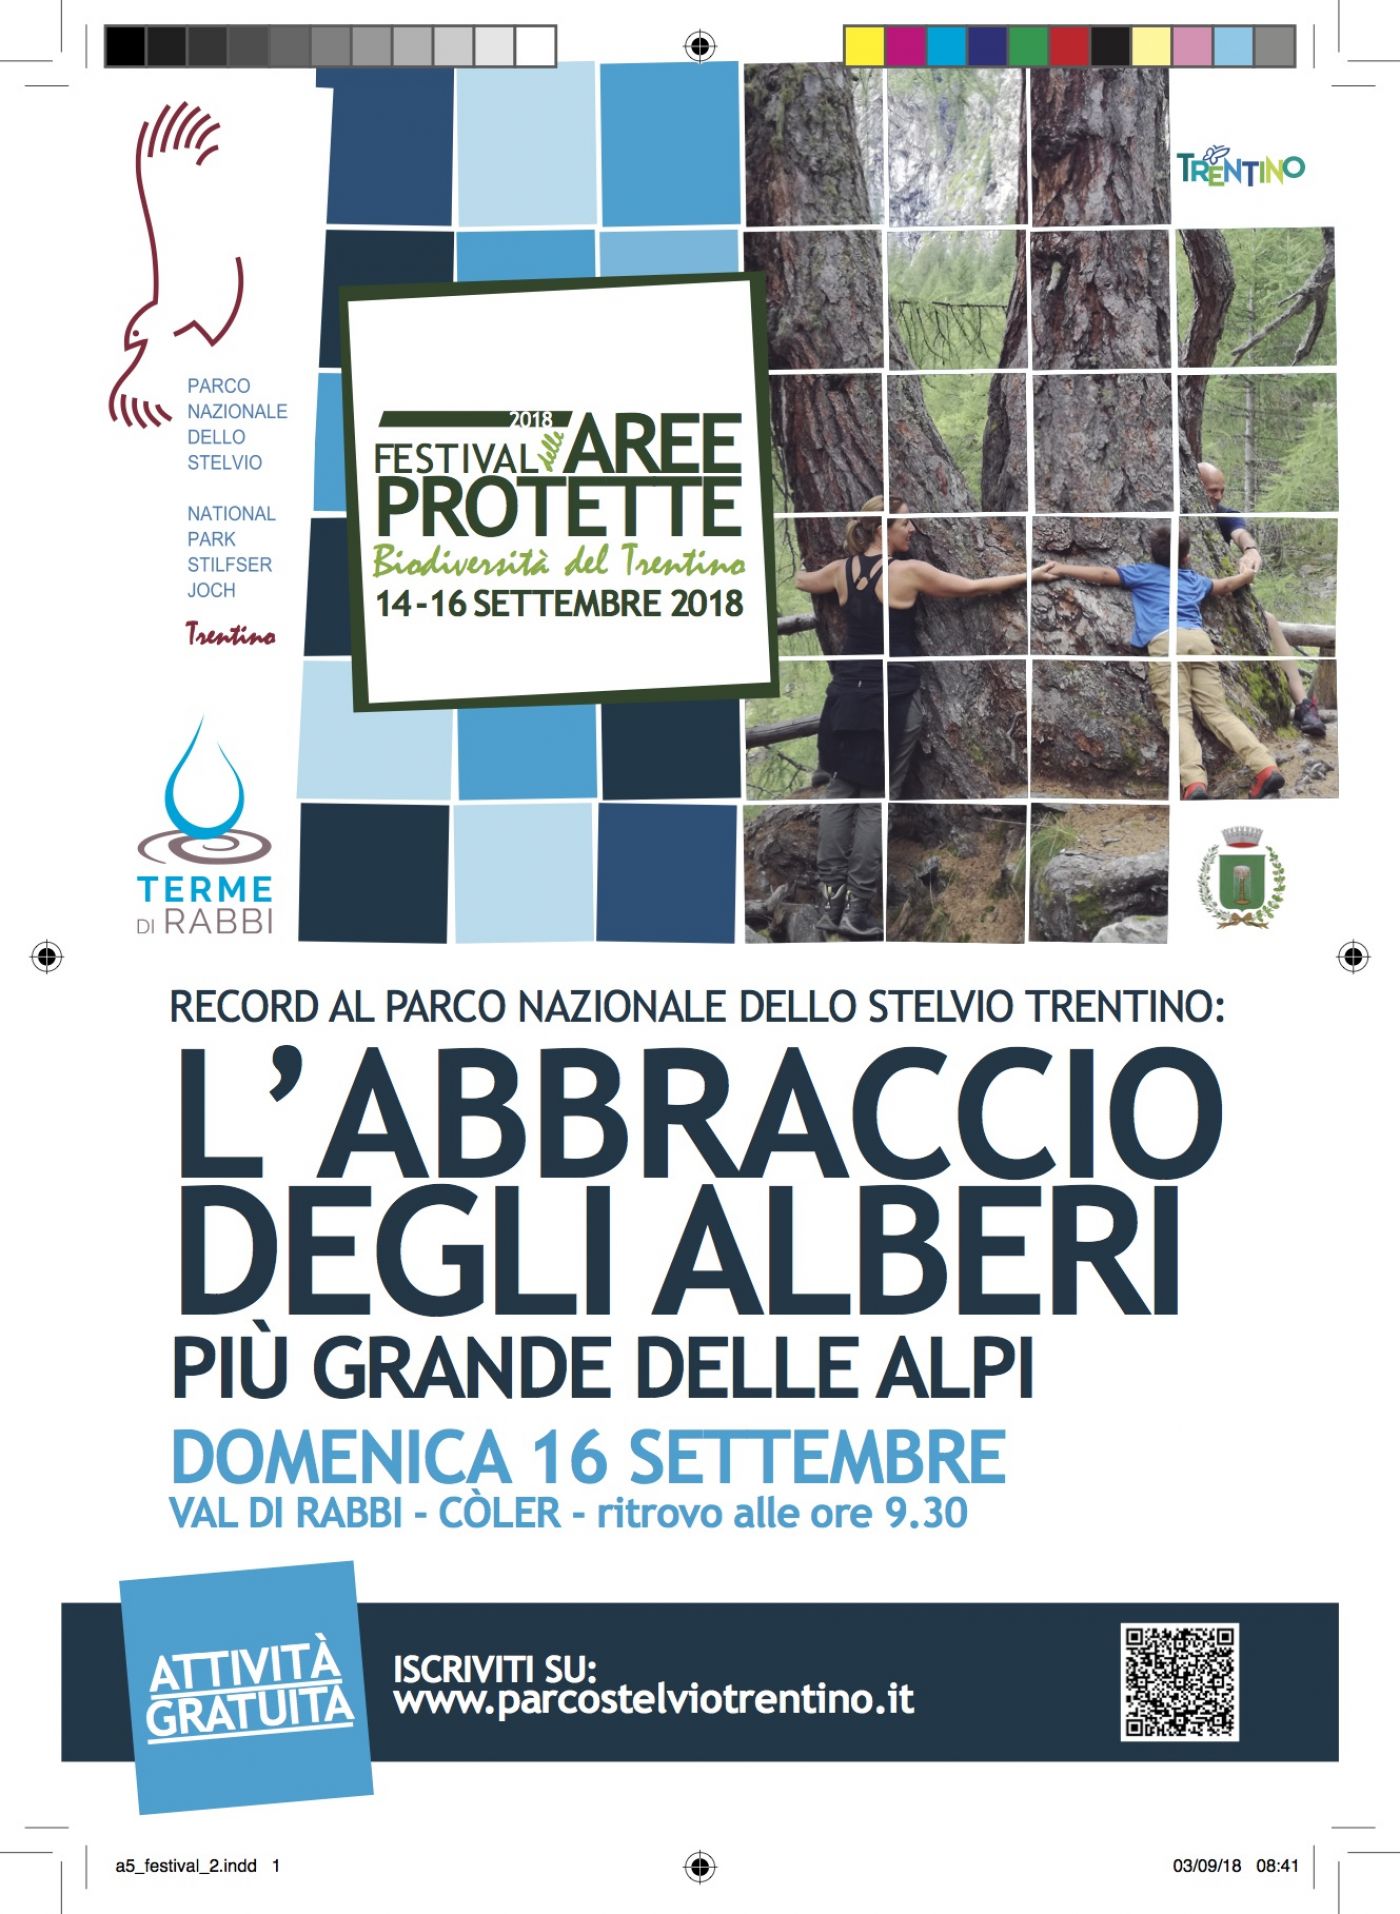 Tree Hugging at Parco nazionale dello Stelvio- Italy